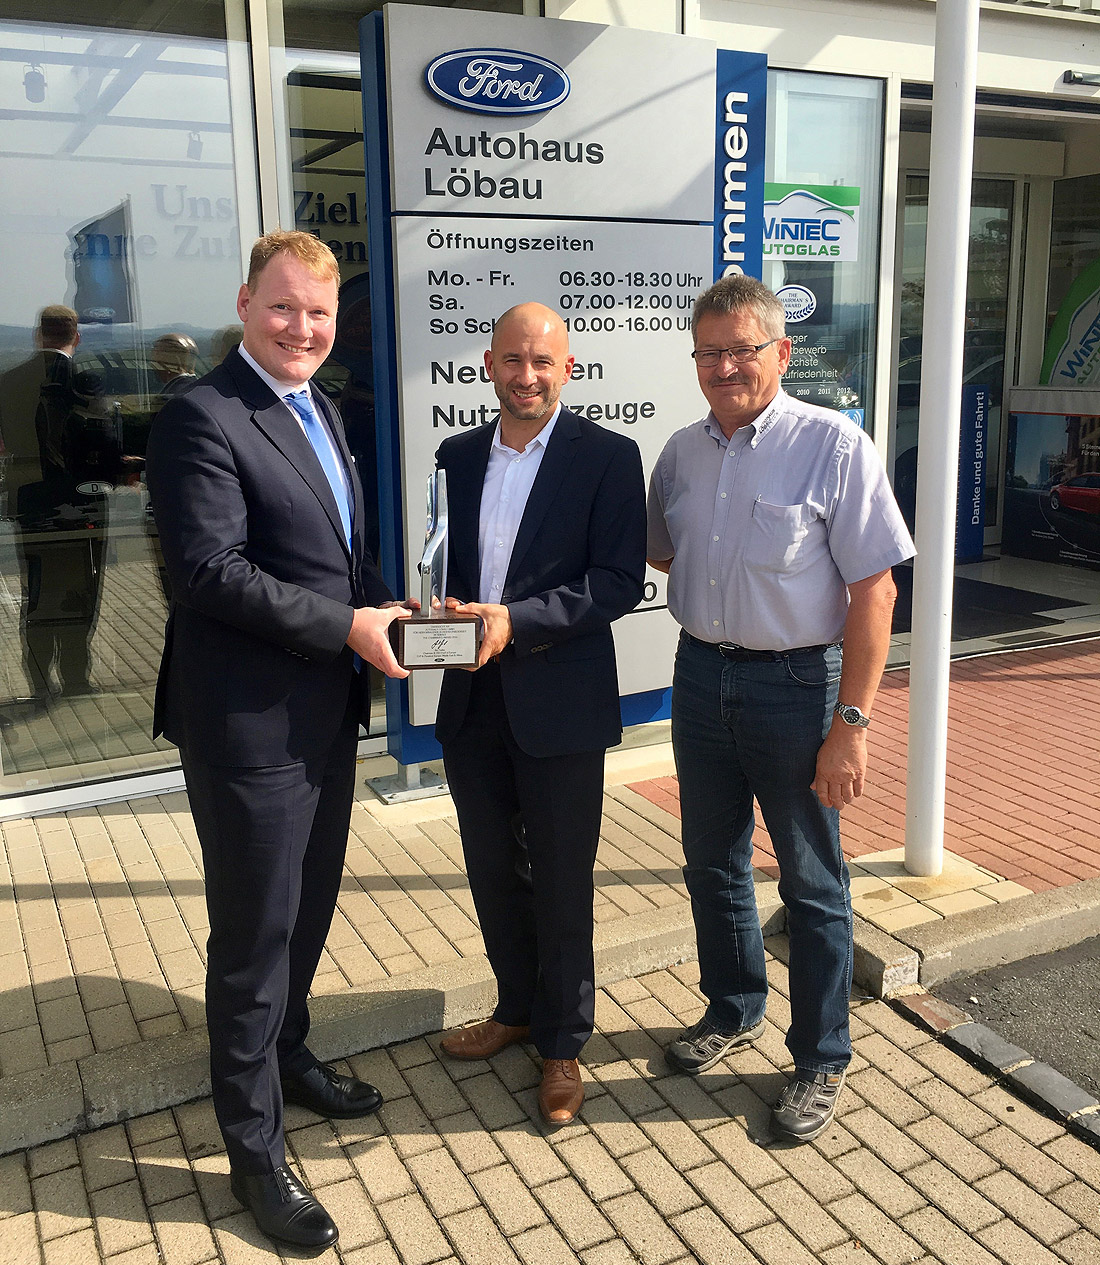 Autohaus Löbau Auszeichnung Ford Chariman's Award 2017